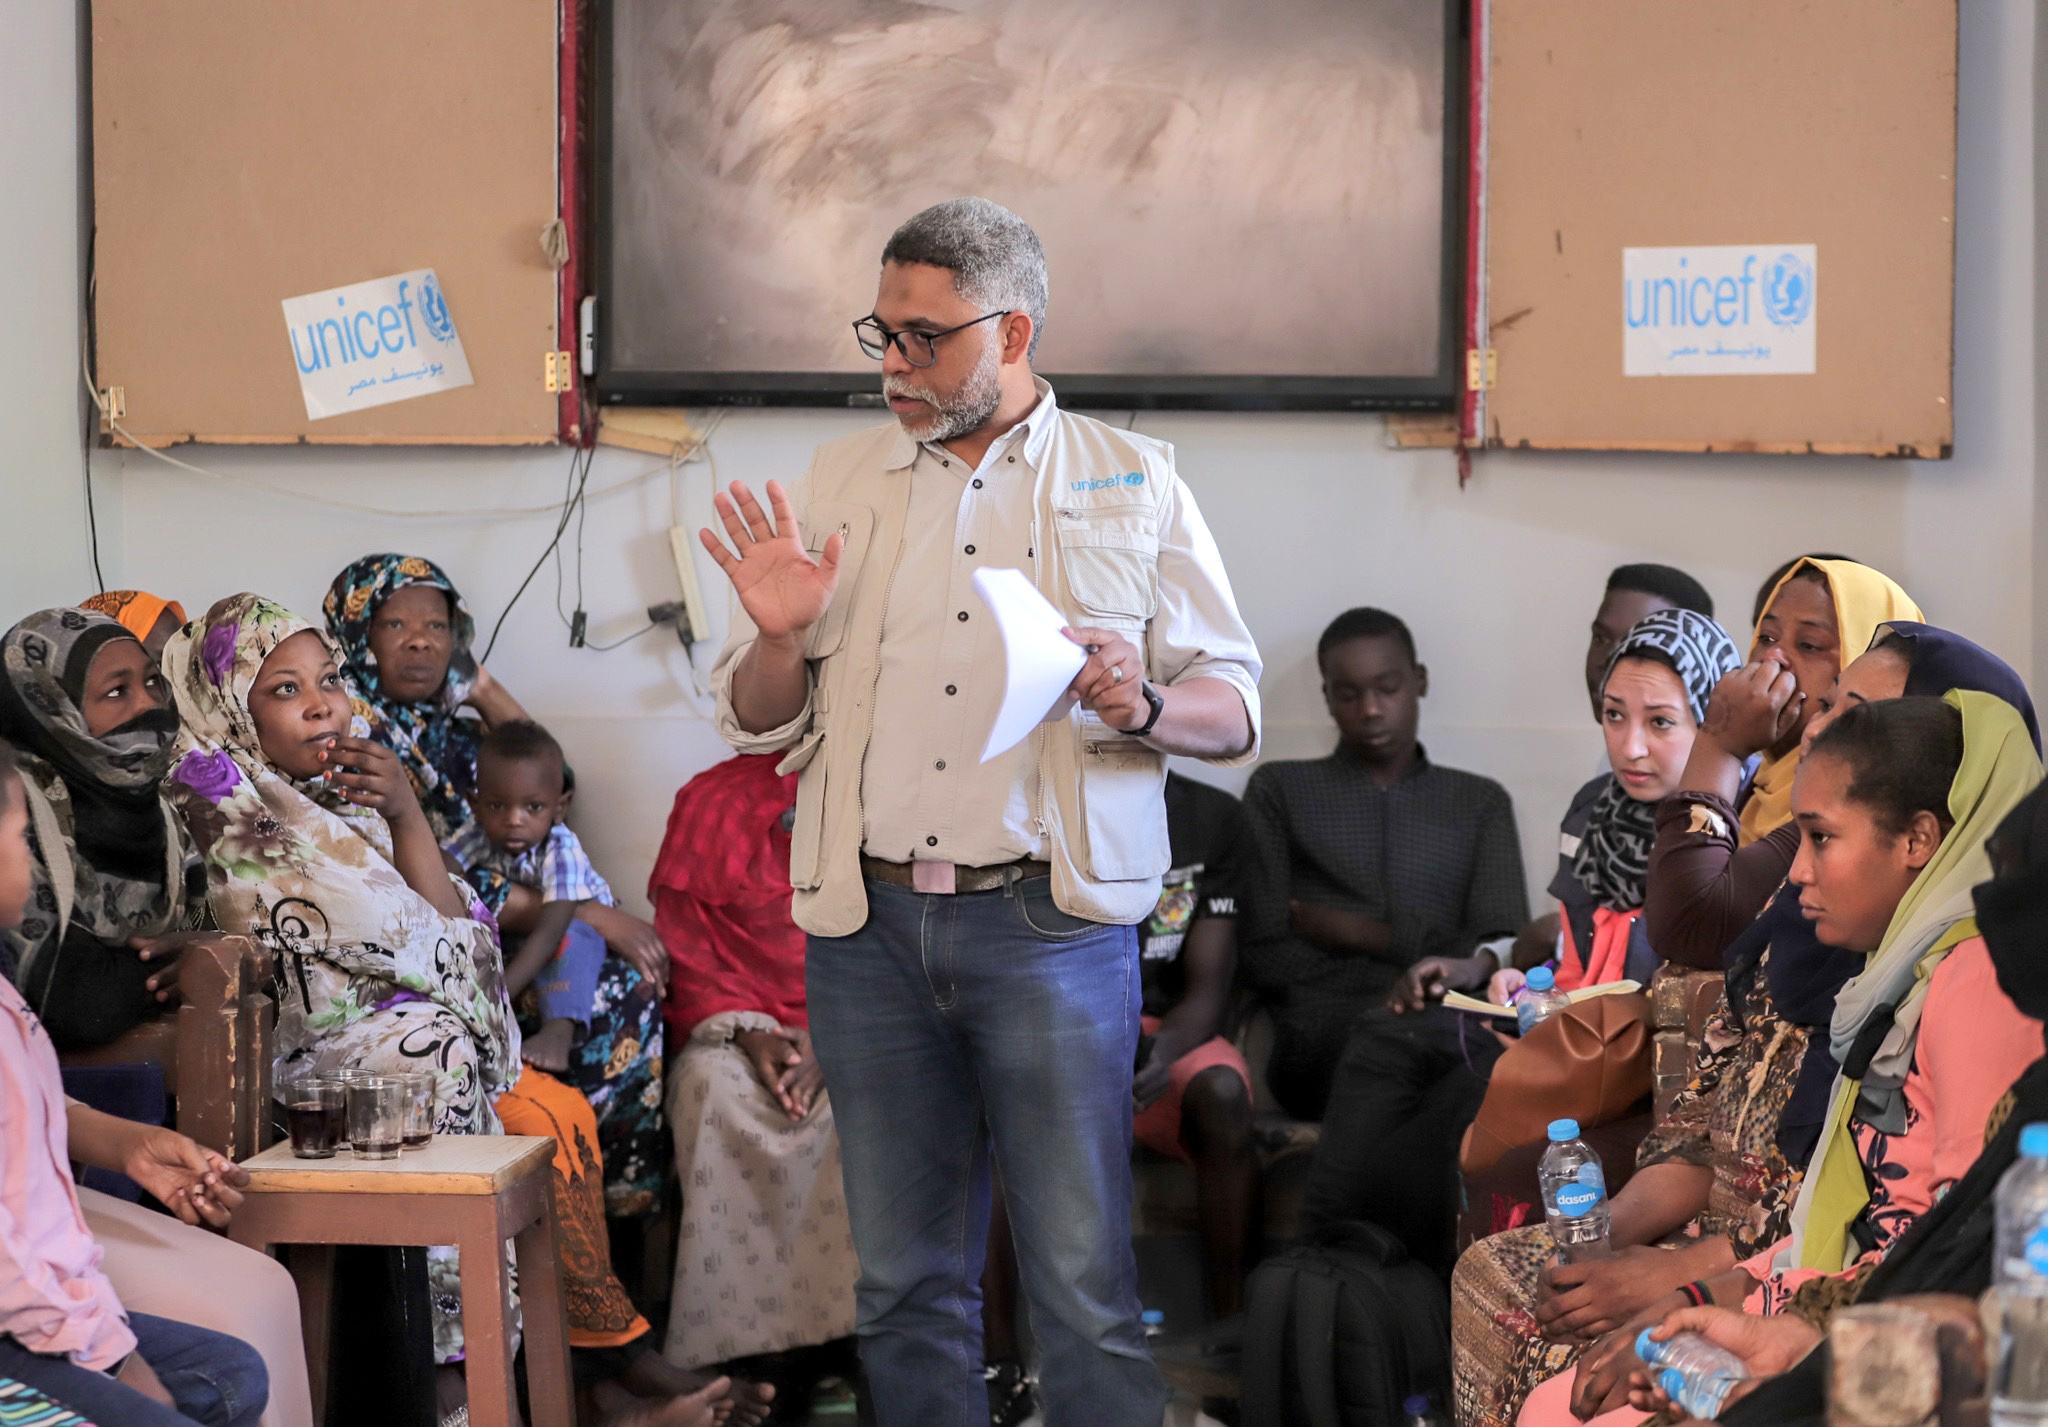 ممثل عن منظمة اليونيسف في مصر يتحدث مع أسر سودانية،  في إحدى جلسات الإرشاد النفسي بنادي الأسرة للسودانيين بموقف كركر الدولي بأسوان.